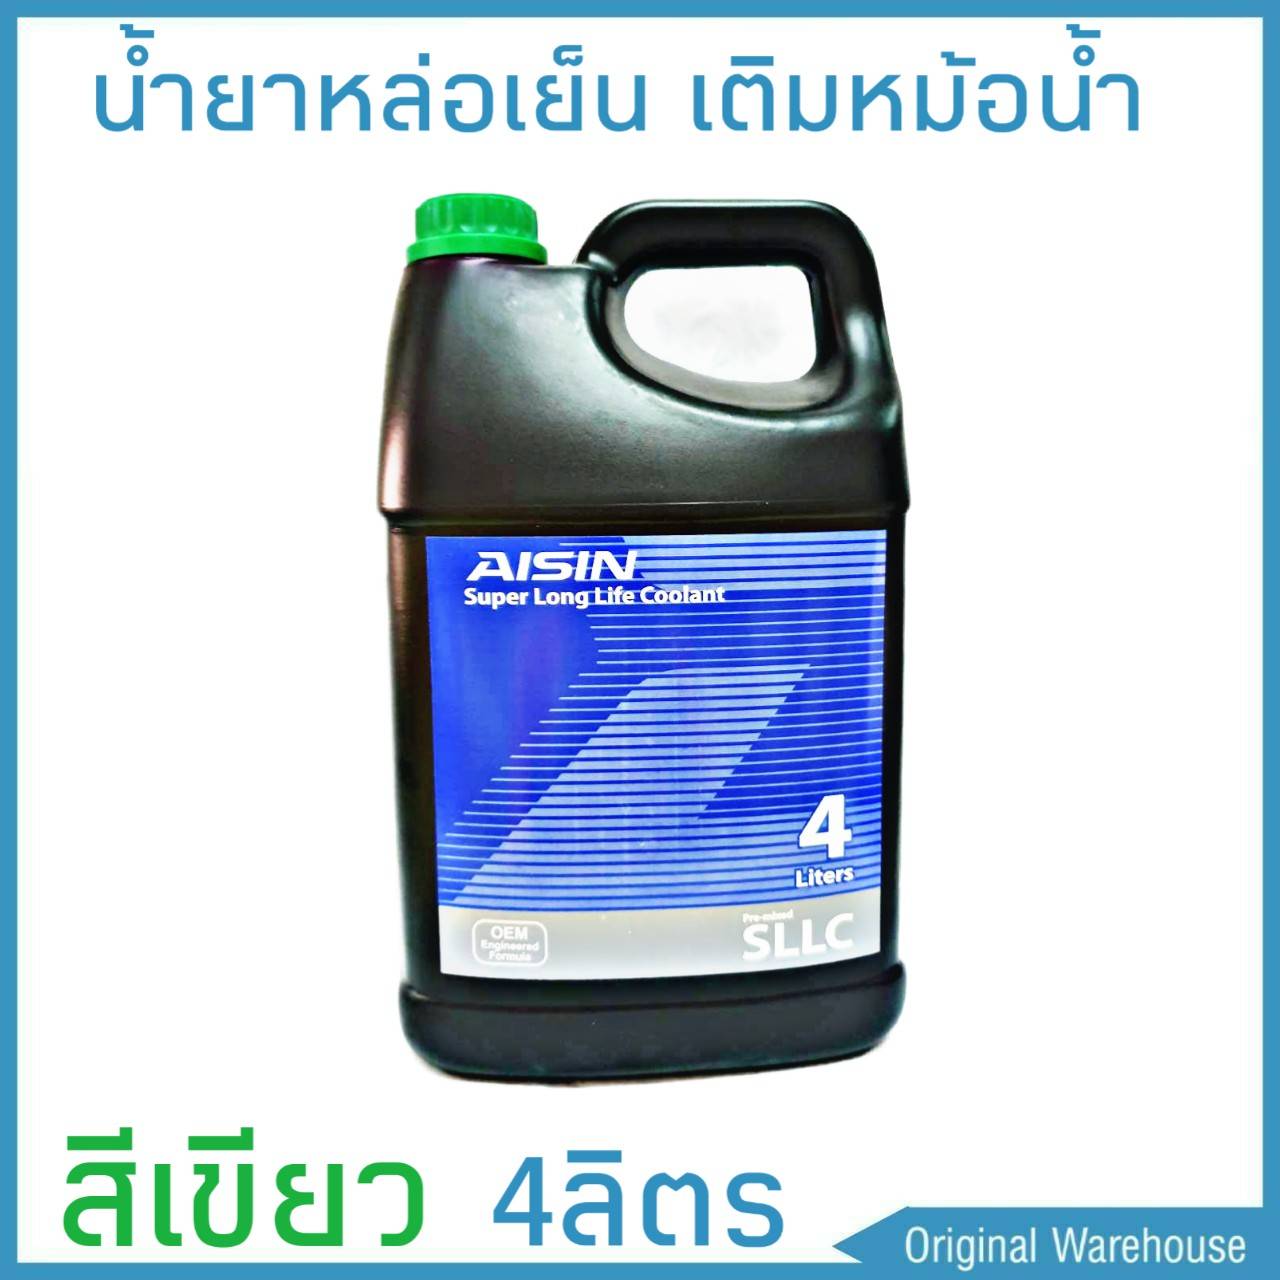 น้ำยาหม้อน้ำ AISIN COOLANT สีเขียว 4ลิตร น้ำยาหล่อเย็นหม้อน้ำ ไอซิน